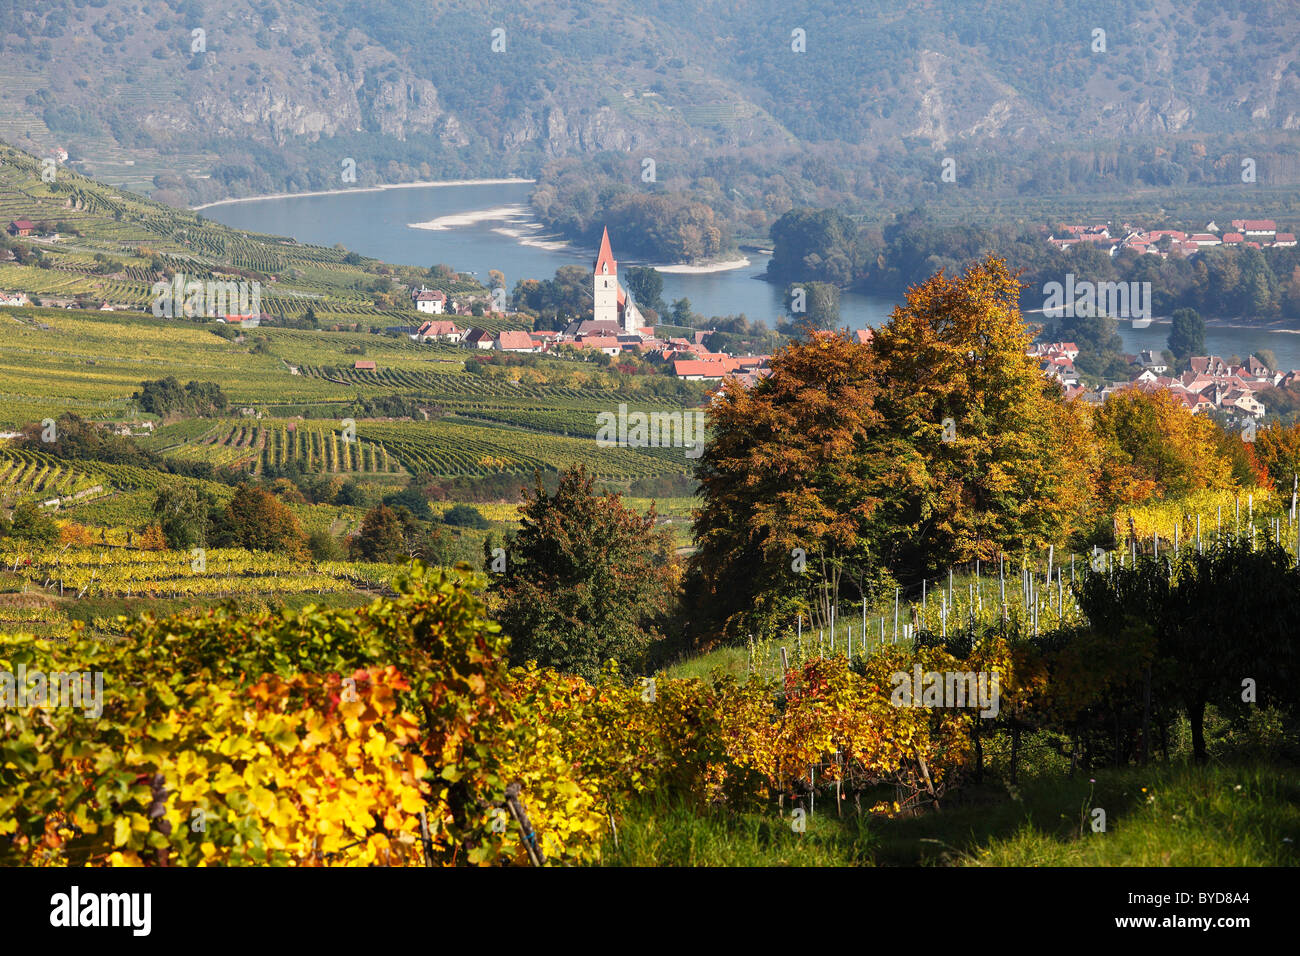 Vineyards, Weissenkirchen in the Wachau valley, Danube river, Waldviertel region, Lower Austria, Austria, Europe Stock Photo